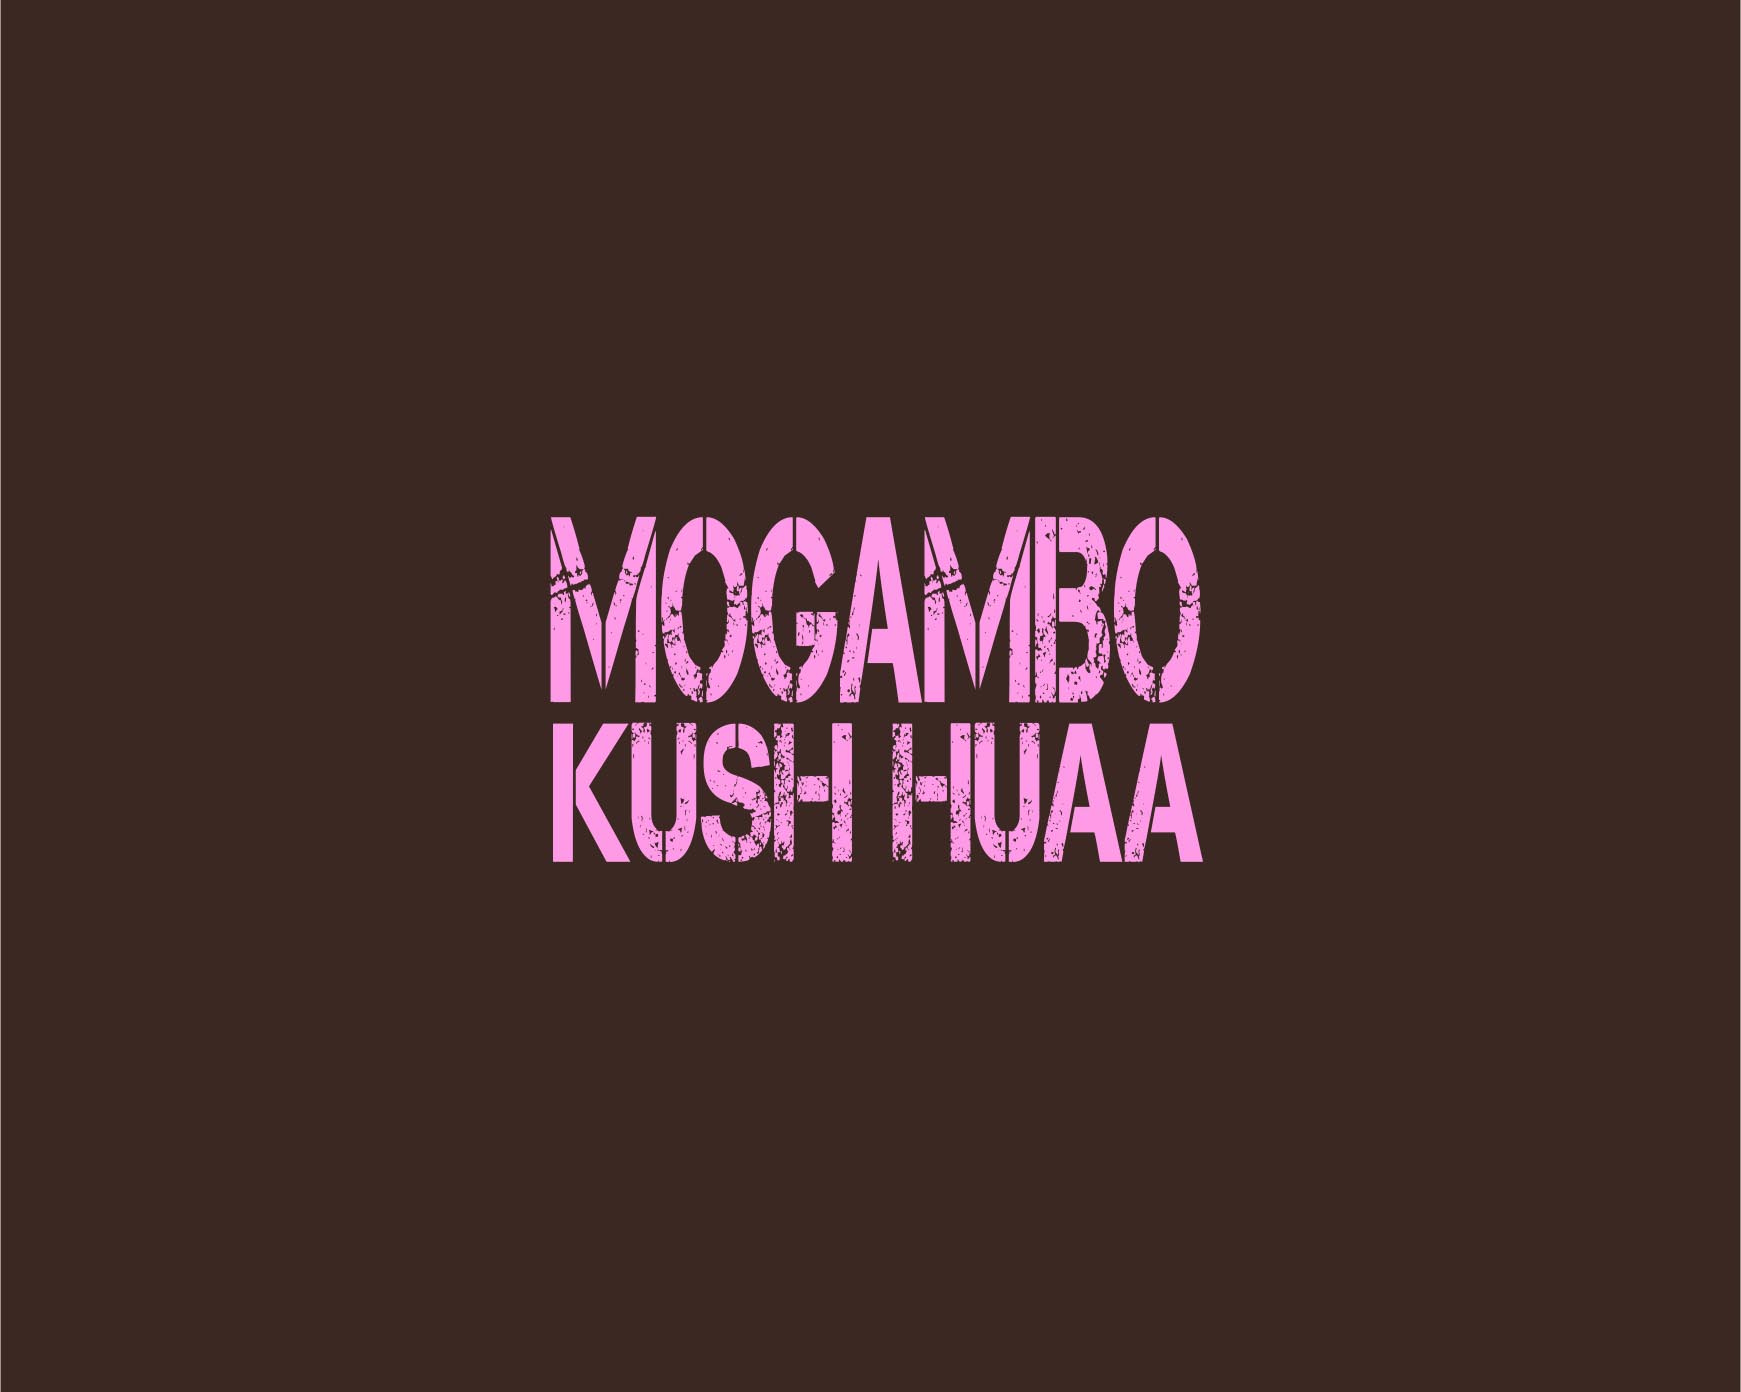 MOGAMBO